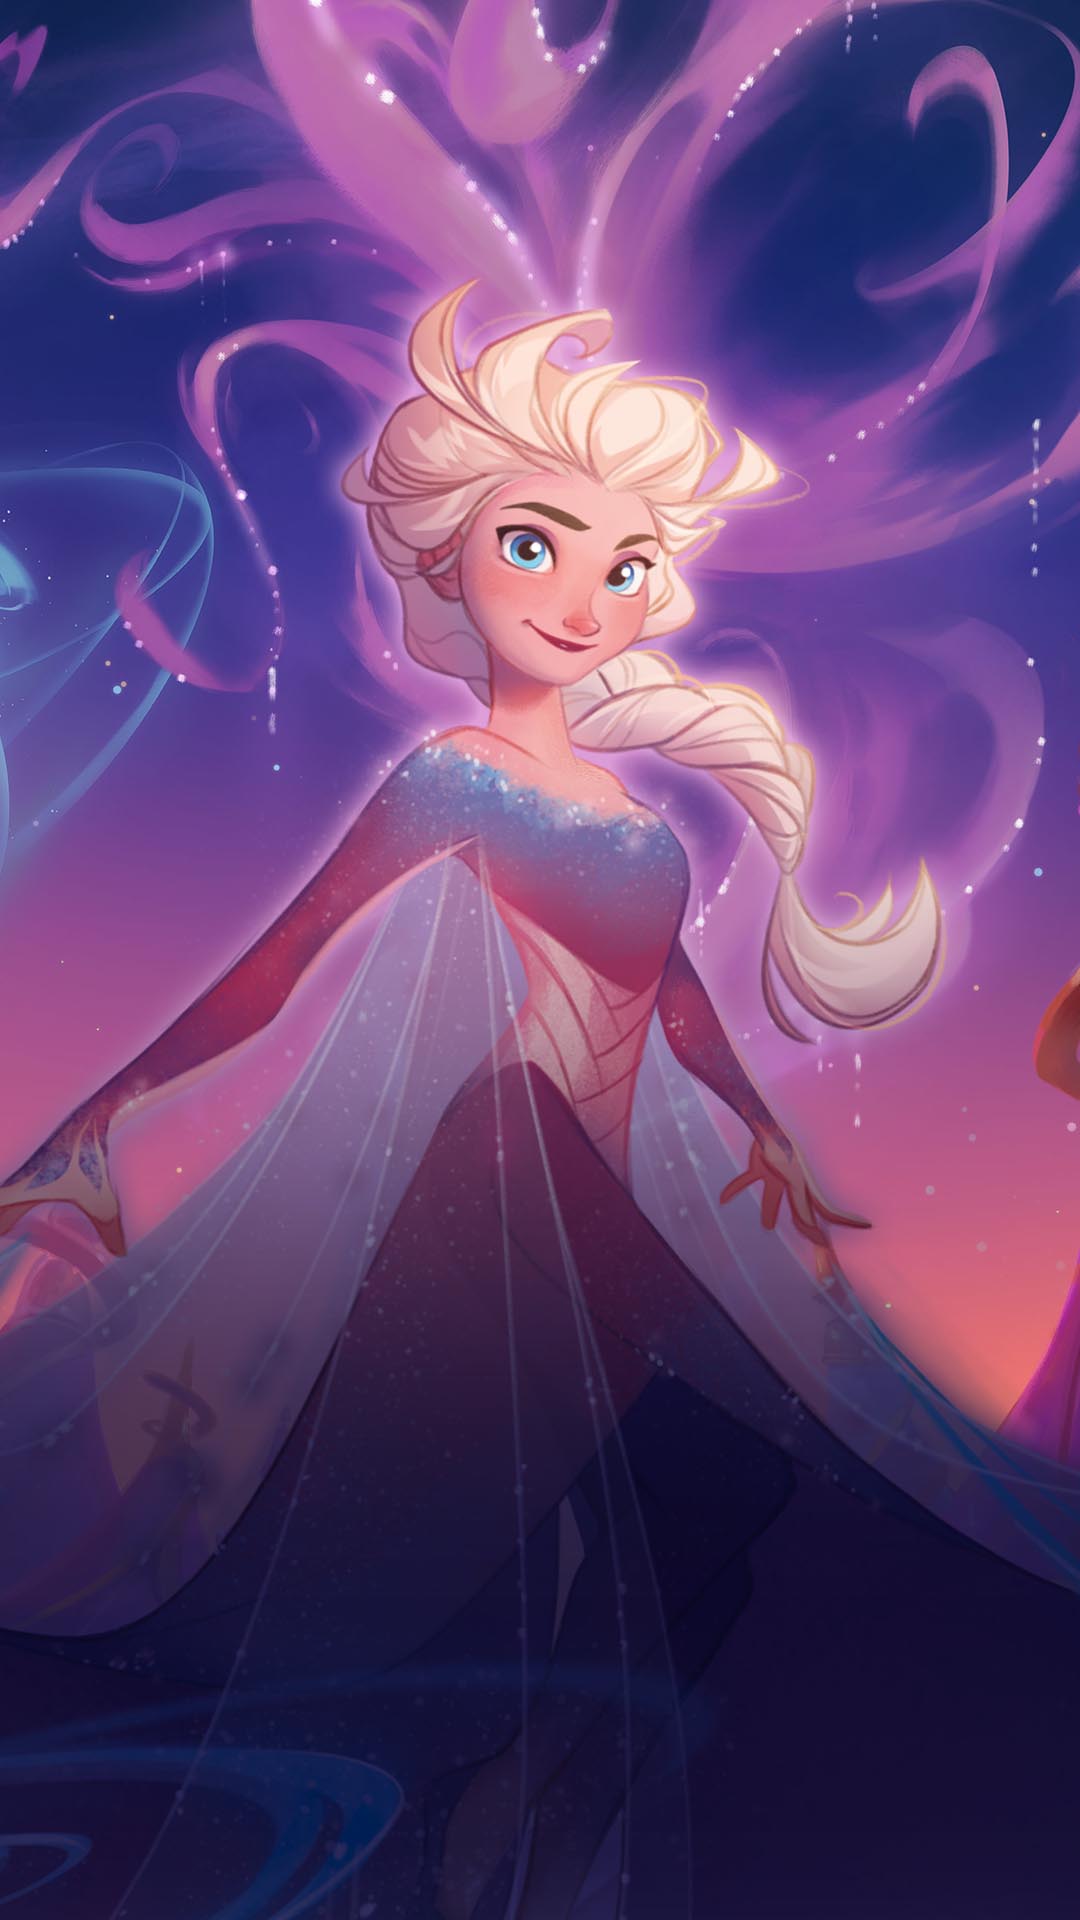 Decorative background image of Elsa